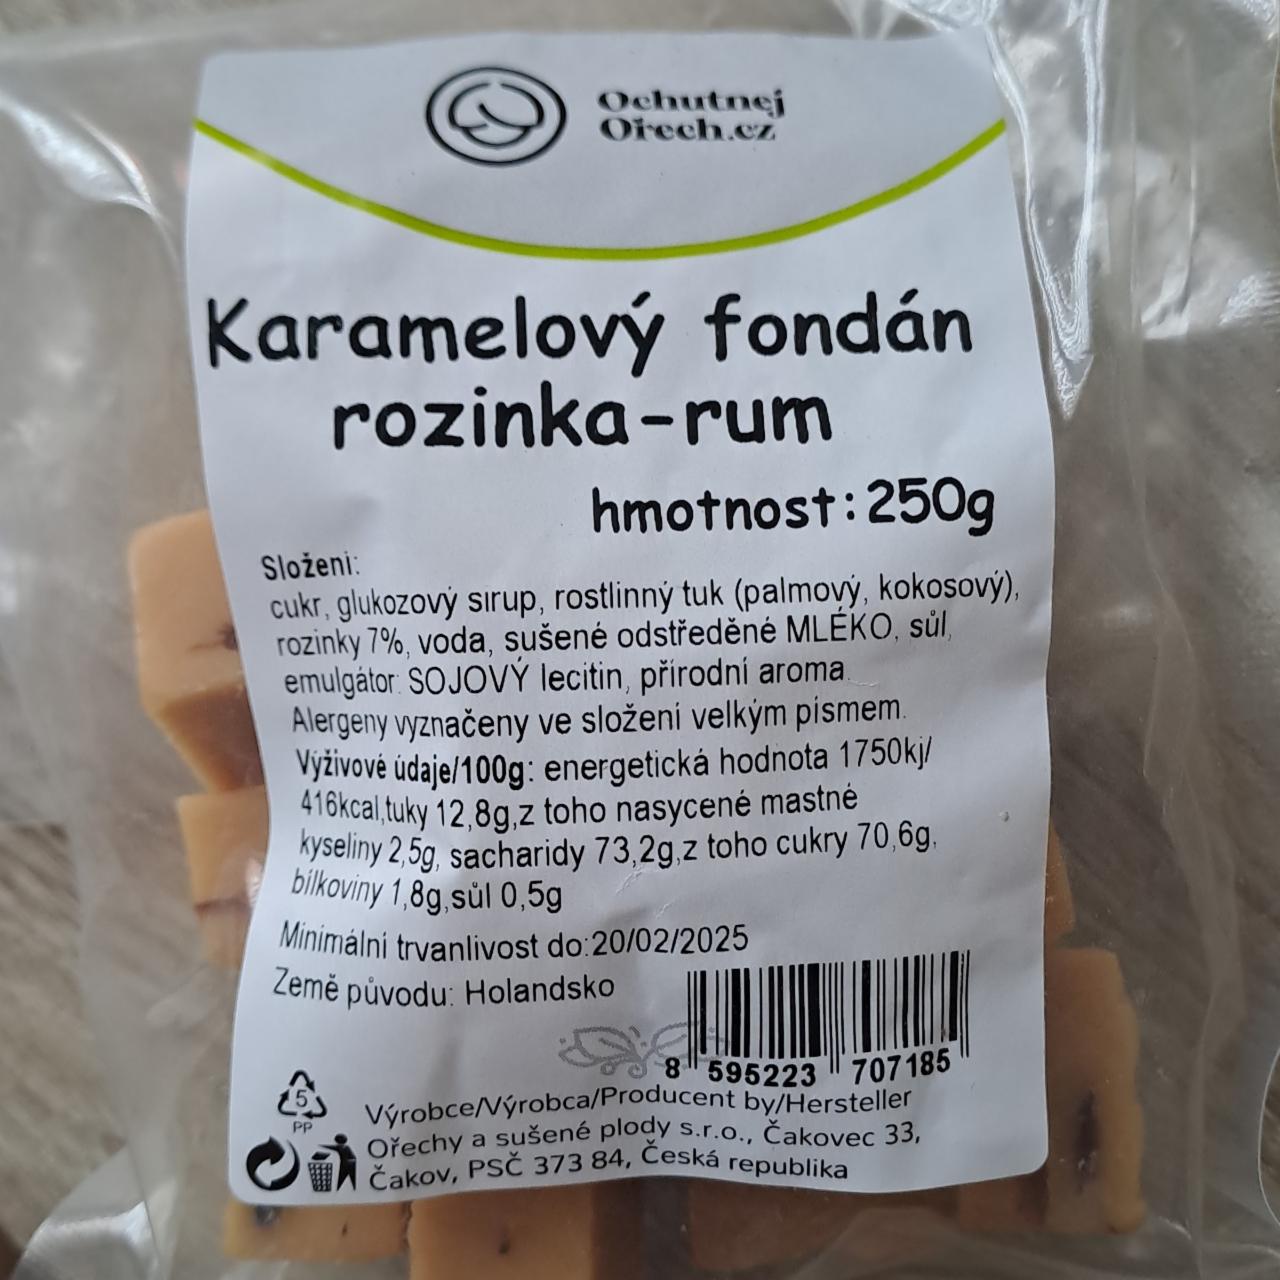 Fotografie - Karamelový fondán rozinka rum Ochutnejorech.cz